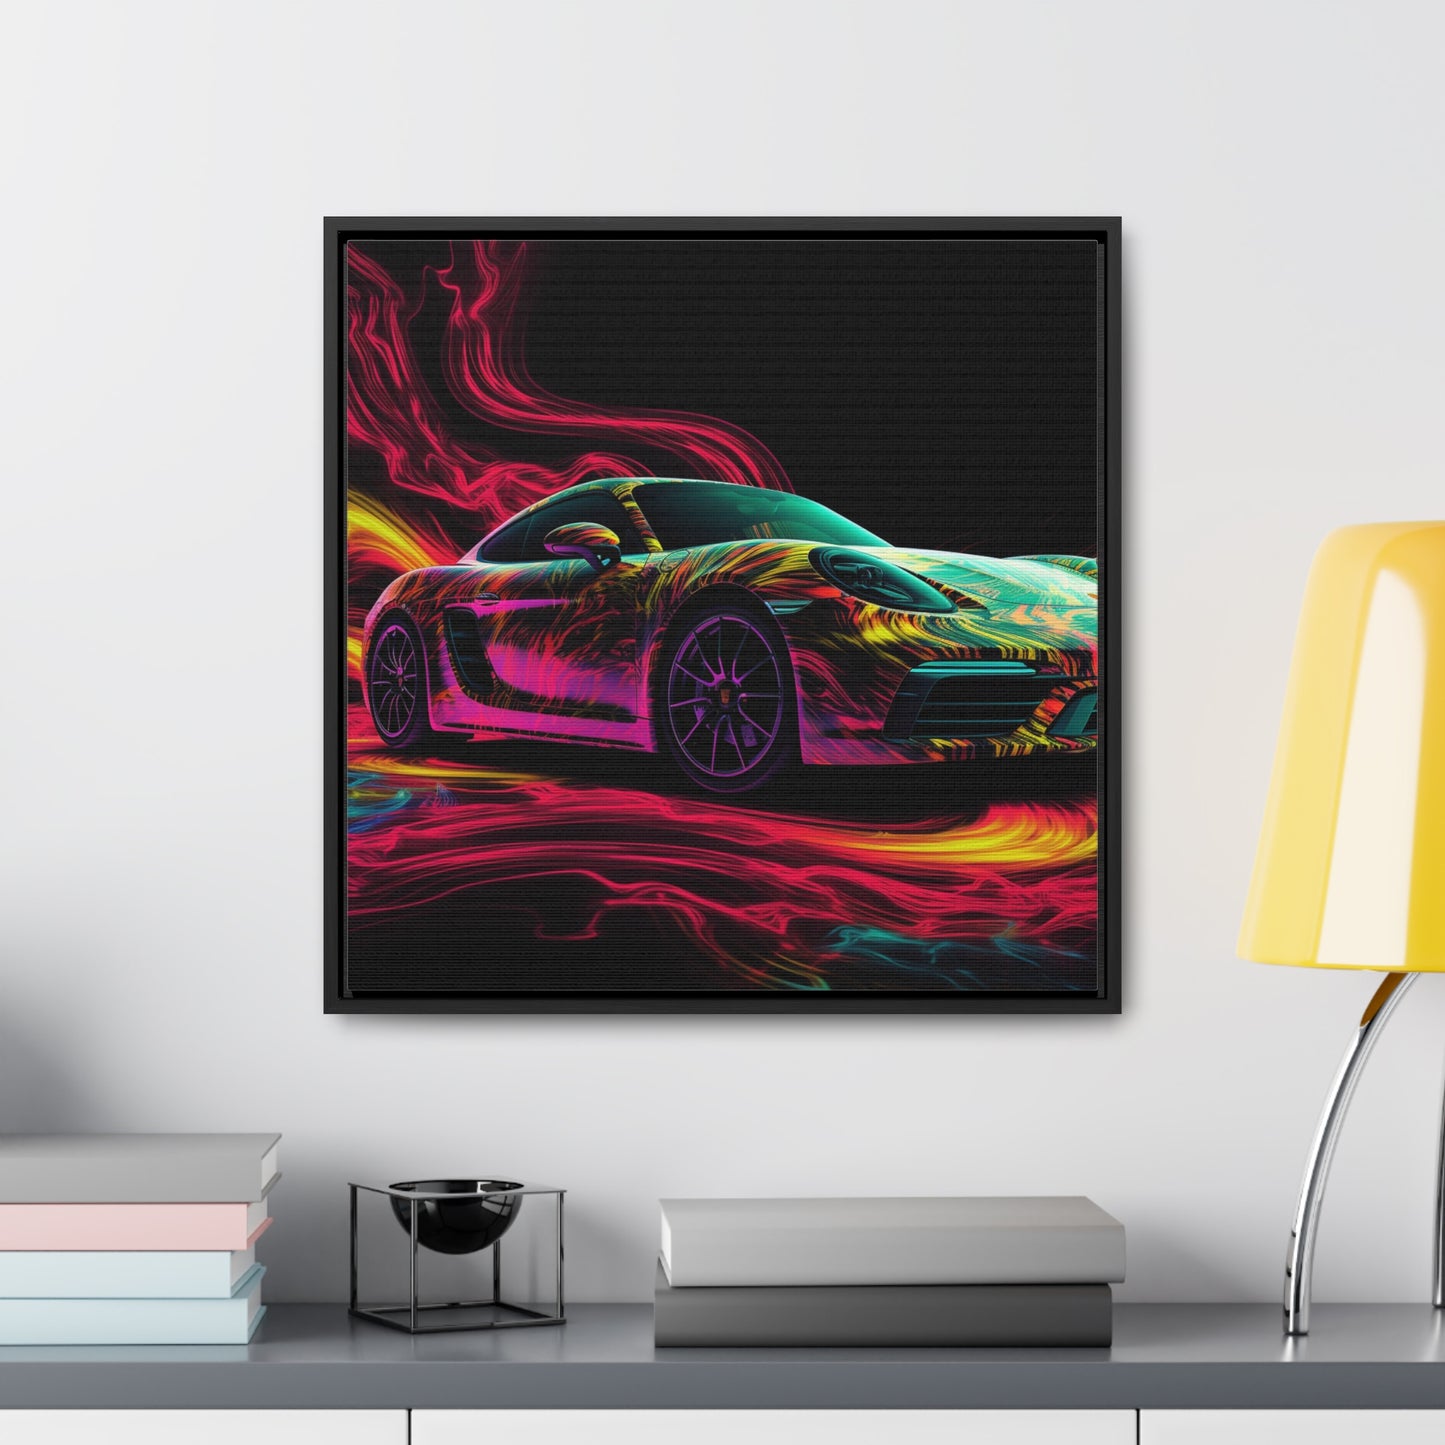 Gallery Canvas Wraps, Square Frame Porsche Flair 1